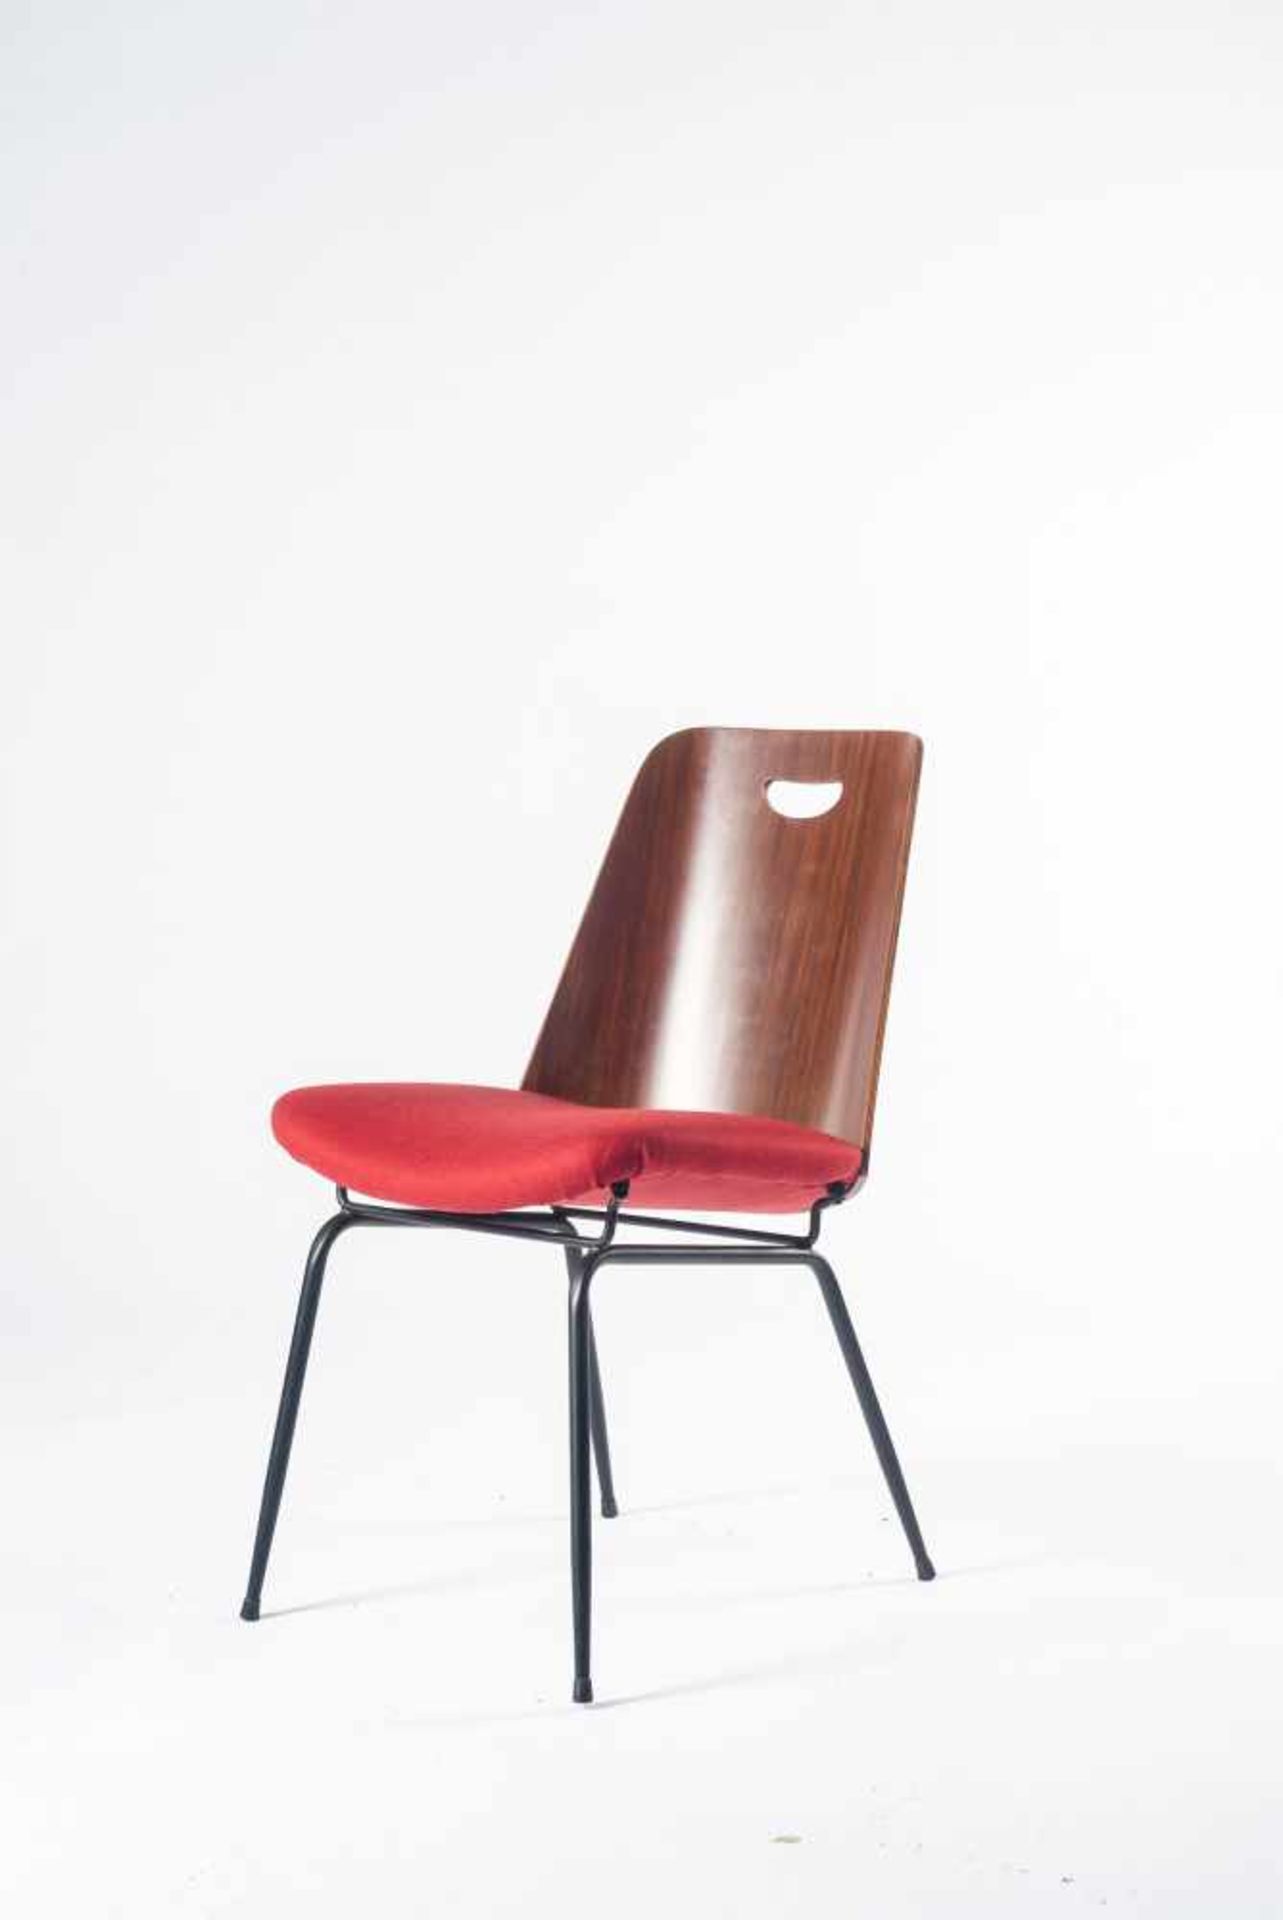 Vier Stühle 'Du 22', um 1952 Gastone Rinaldi H. 80 x 50 x 60 cm. Rima, Padua. Stahlrohr, schwarz - Bild 7 aus 8